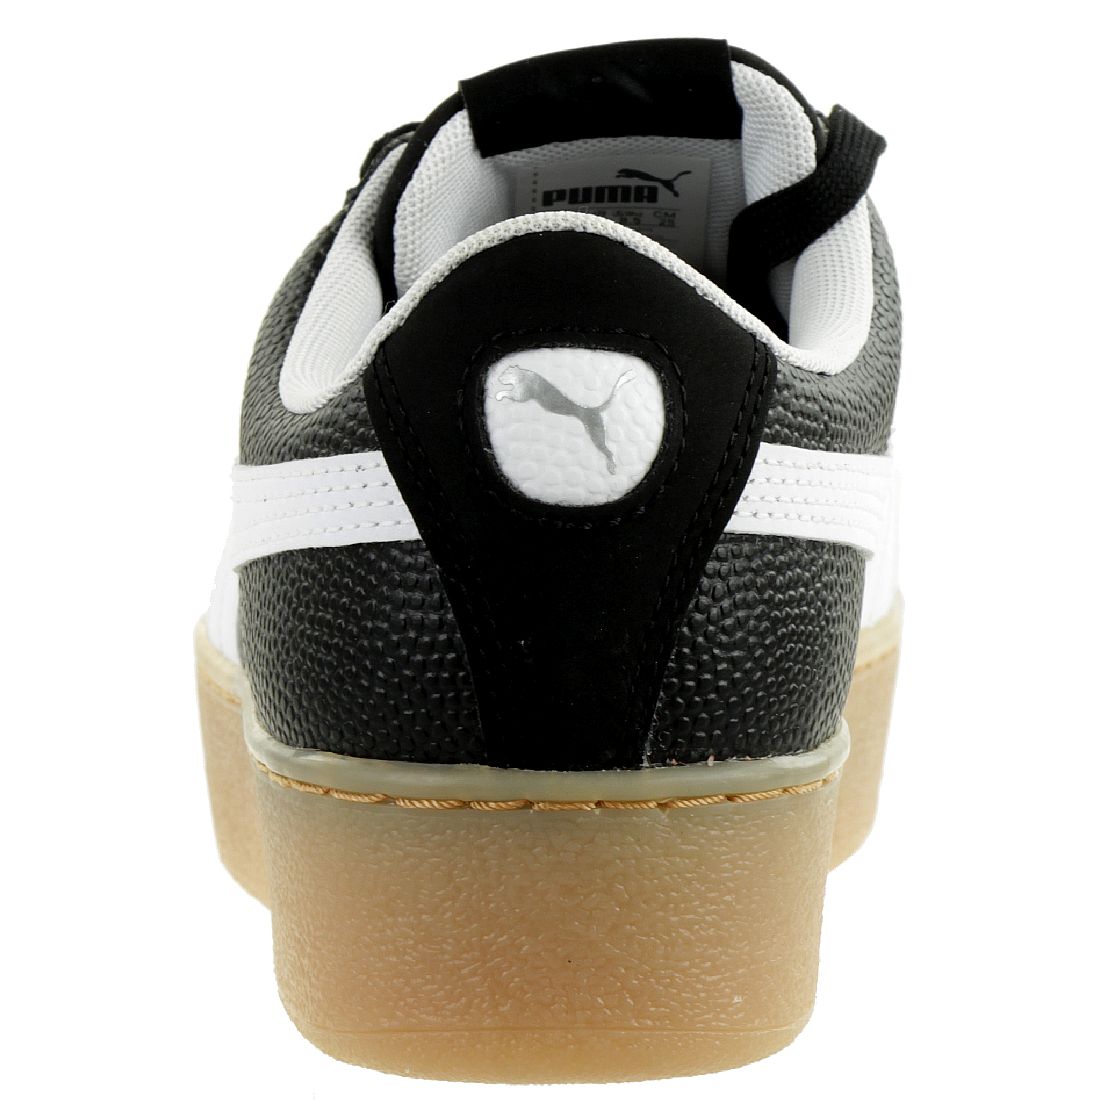 Puma Vikky Platform VT Sneaker Damen Schuhe 366805 02 schwarz